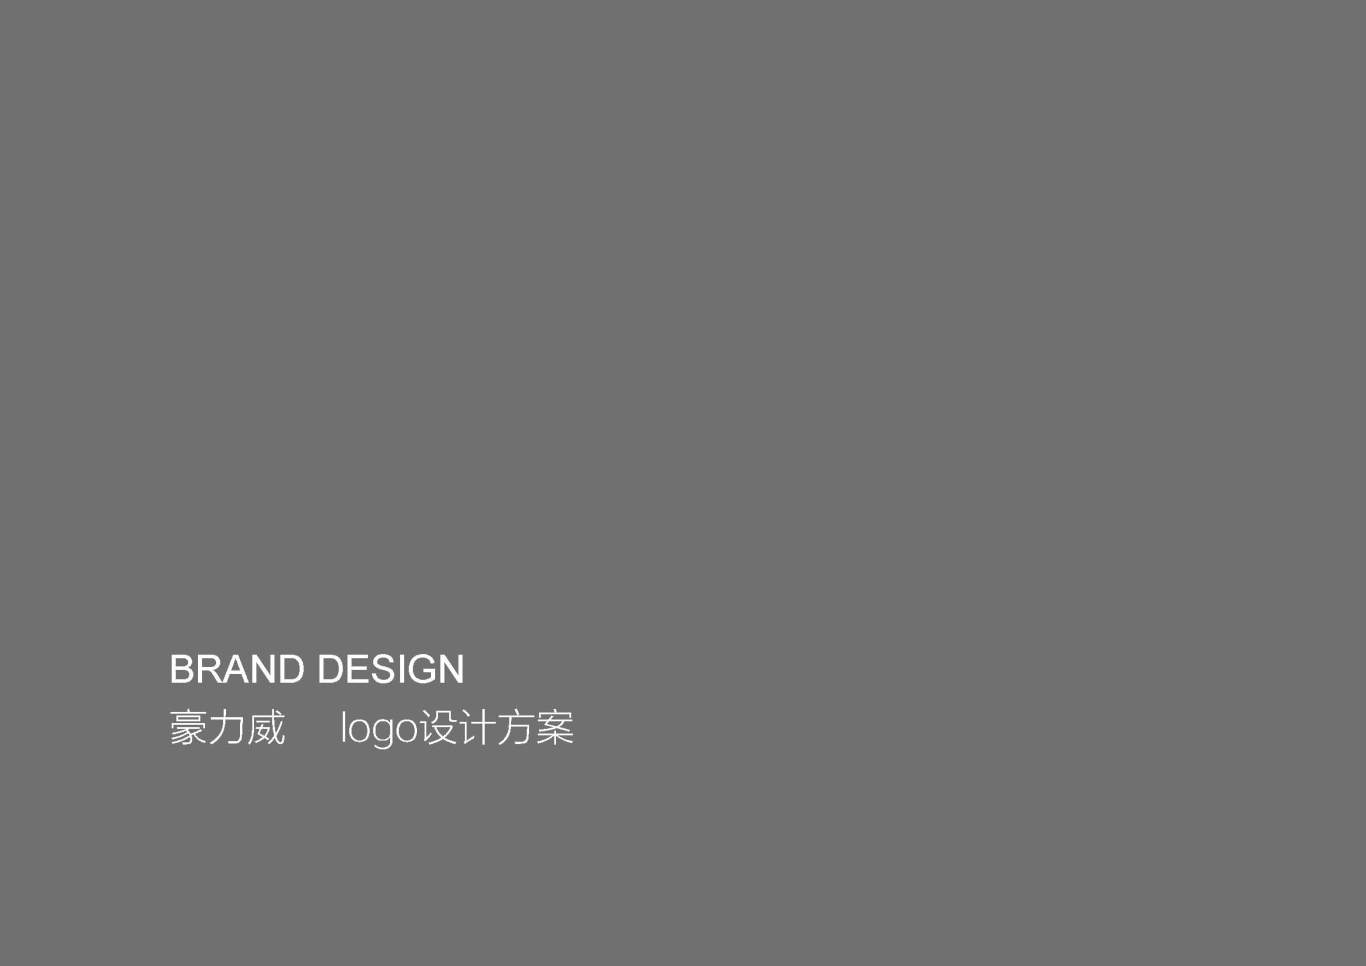 北京豪力威科贸有限公司 品牌设计图0